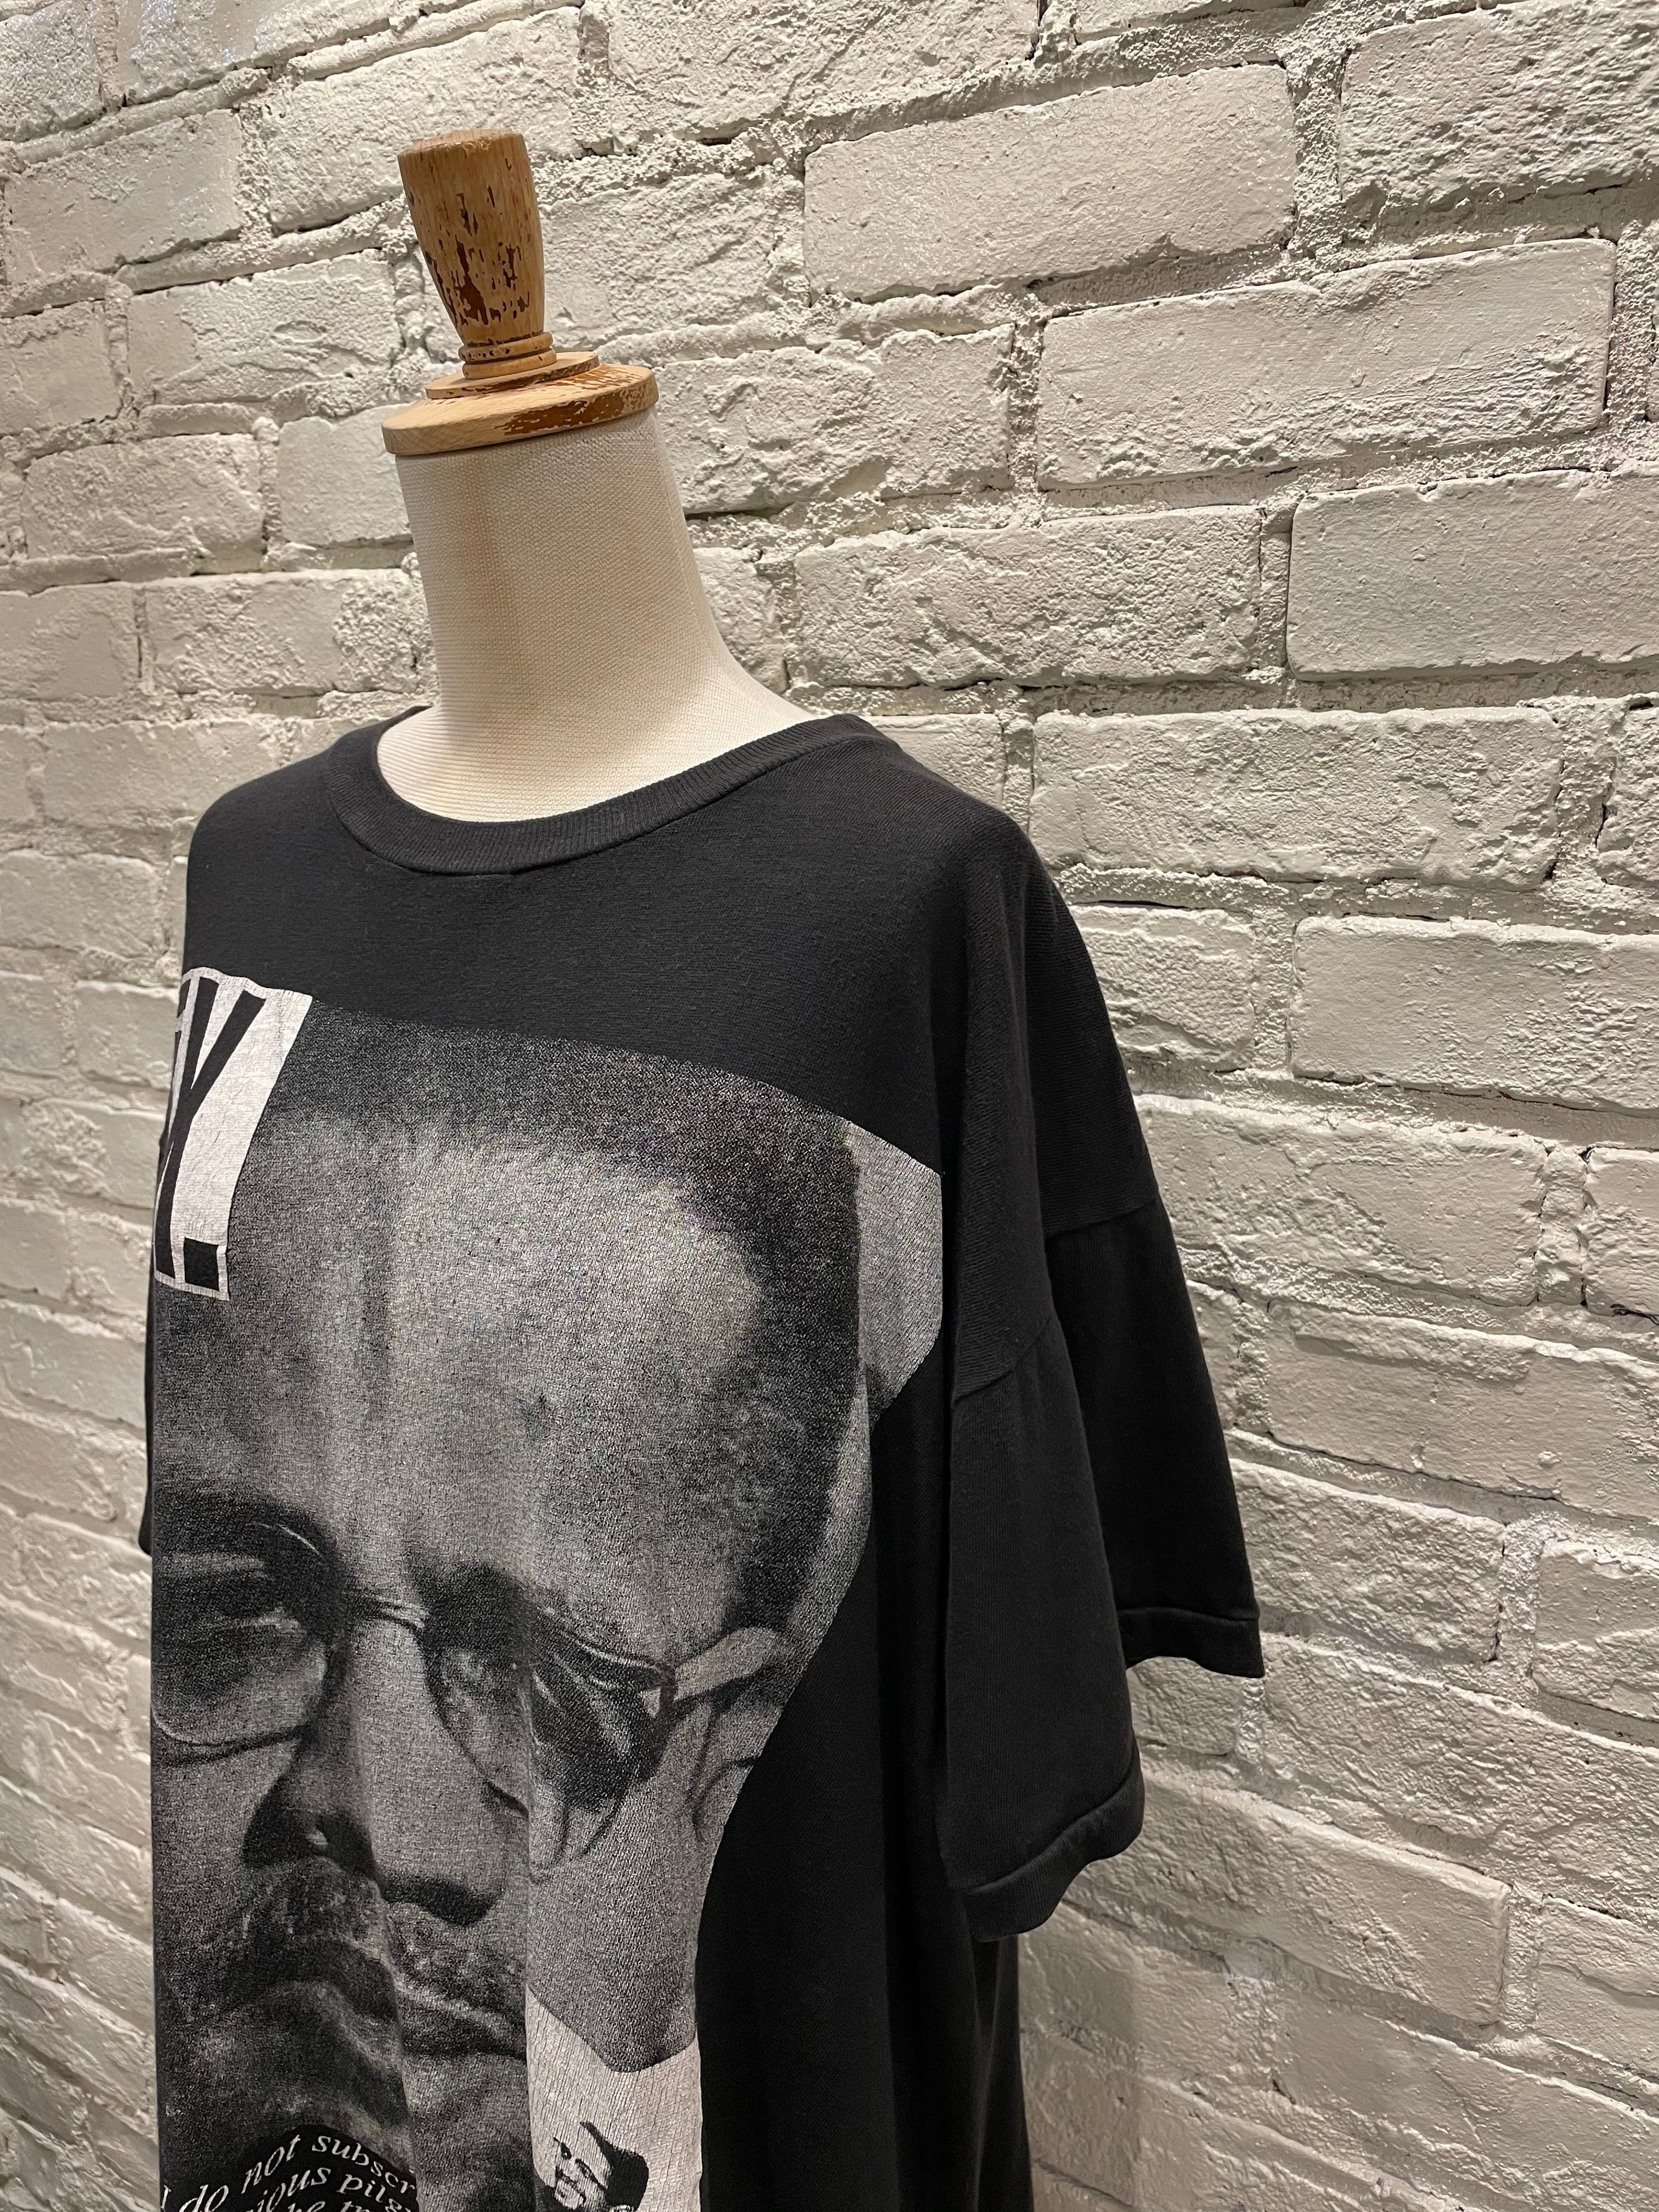 〜80年代 Malcolm X ヴィンテージプリントTシャツ マルコムX | Used & Vintage Clothing 『Lanp by  VALON』 powered by BASE